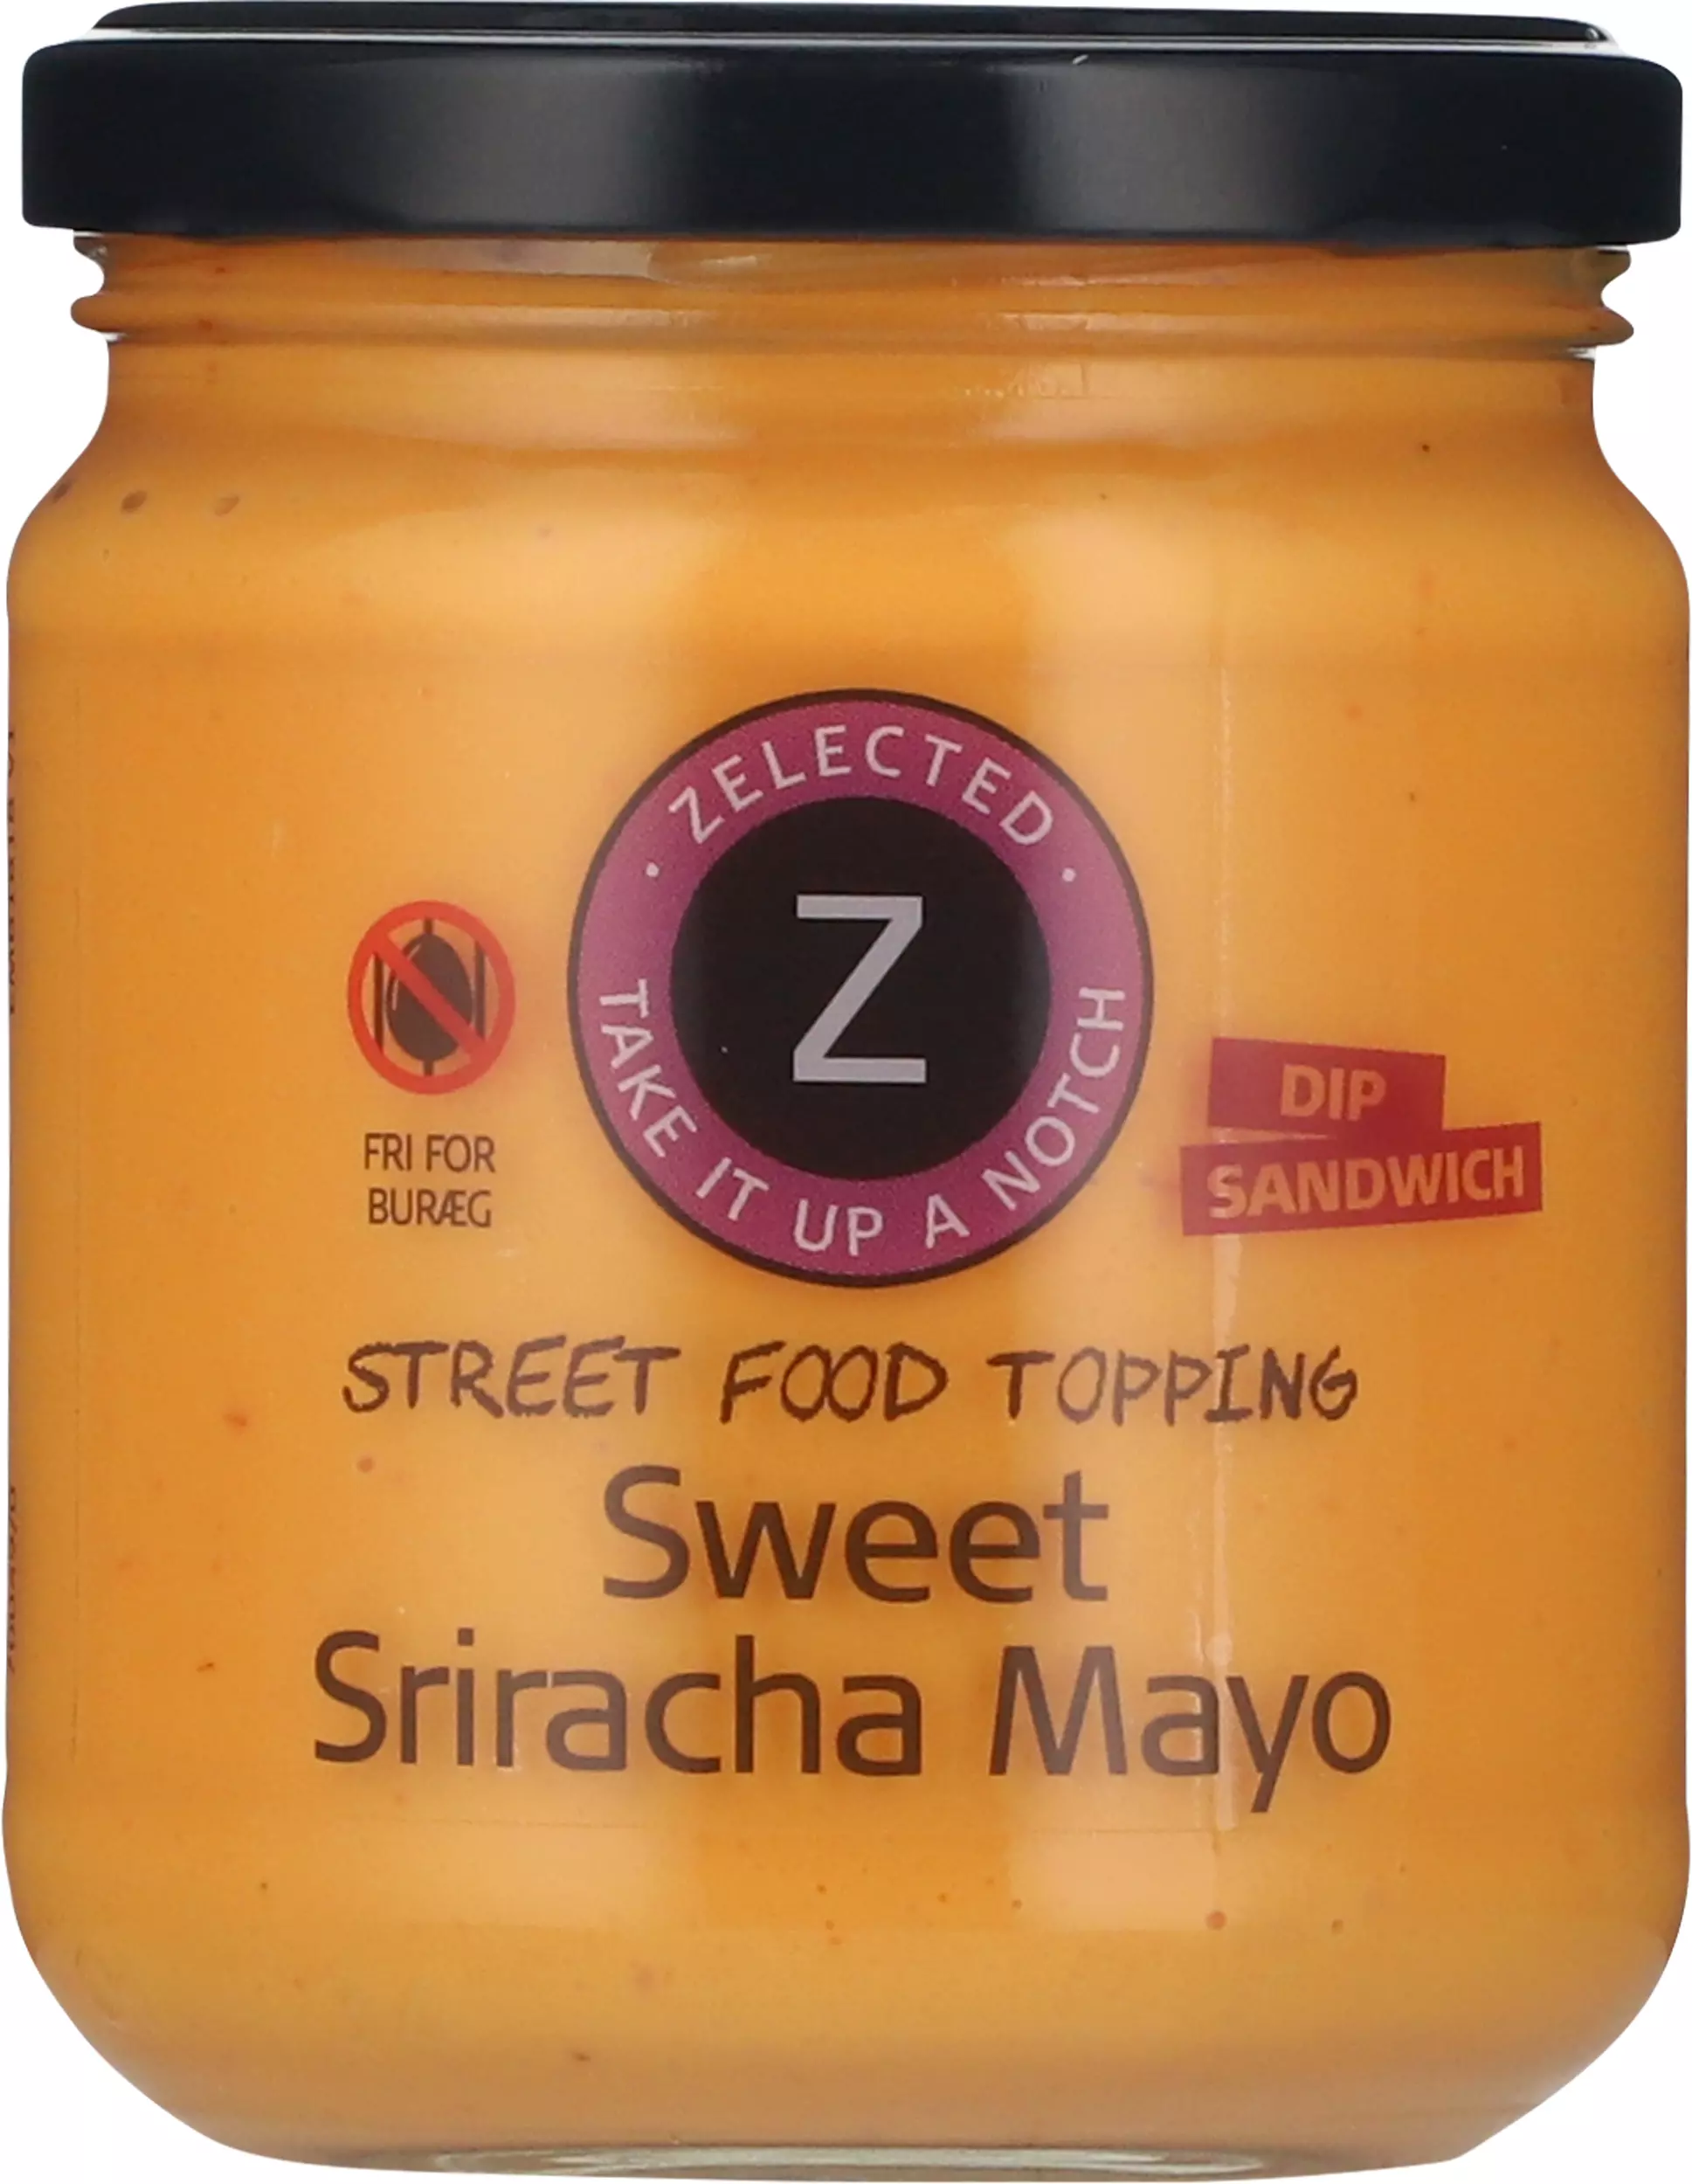 Söt Sriracha Mayo - 180g, Zelected